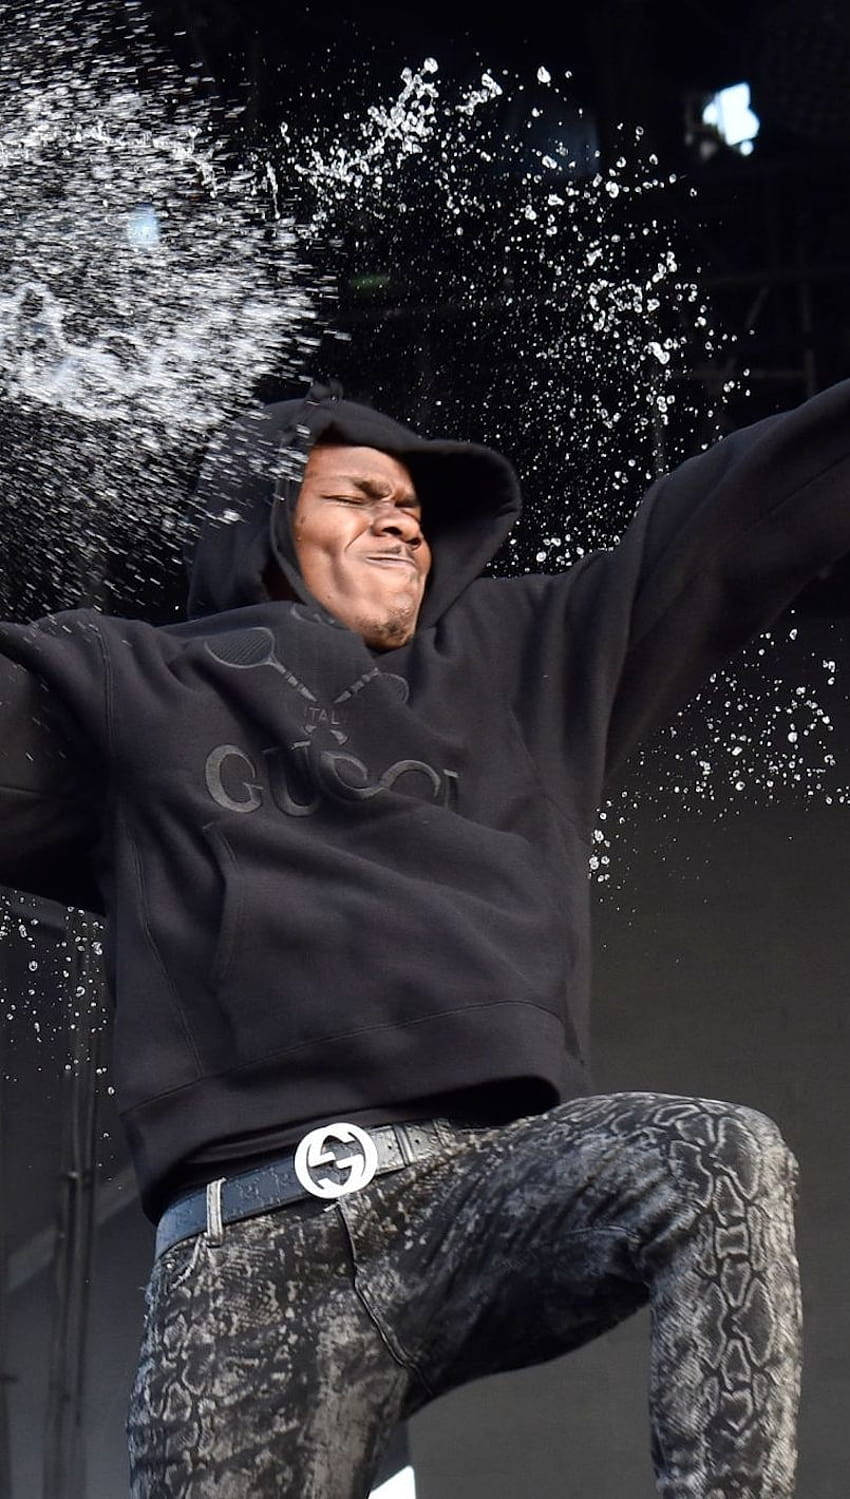 En mand i en sort hættetrøje kaster vand mod en scene. Wallpaper